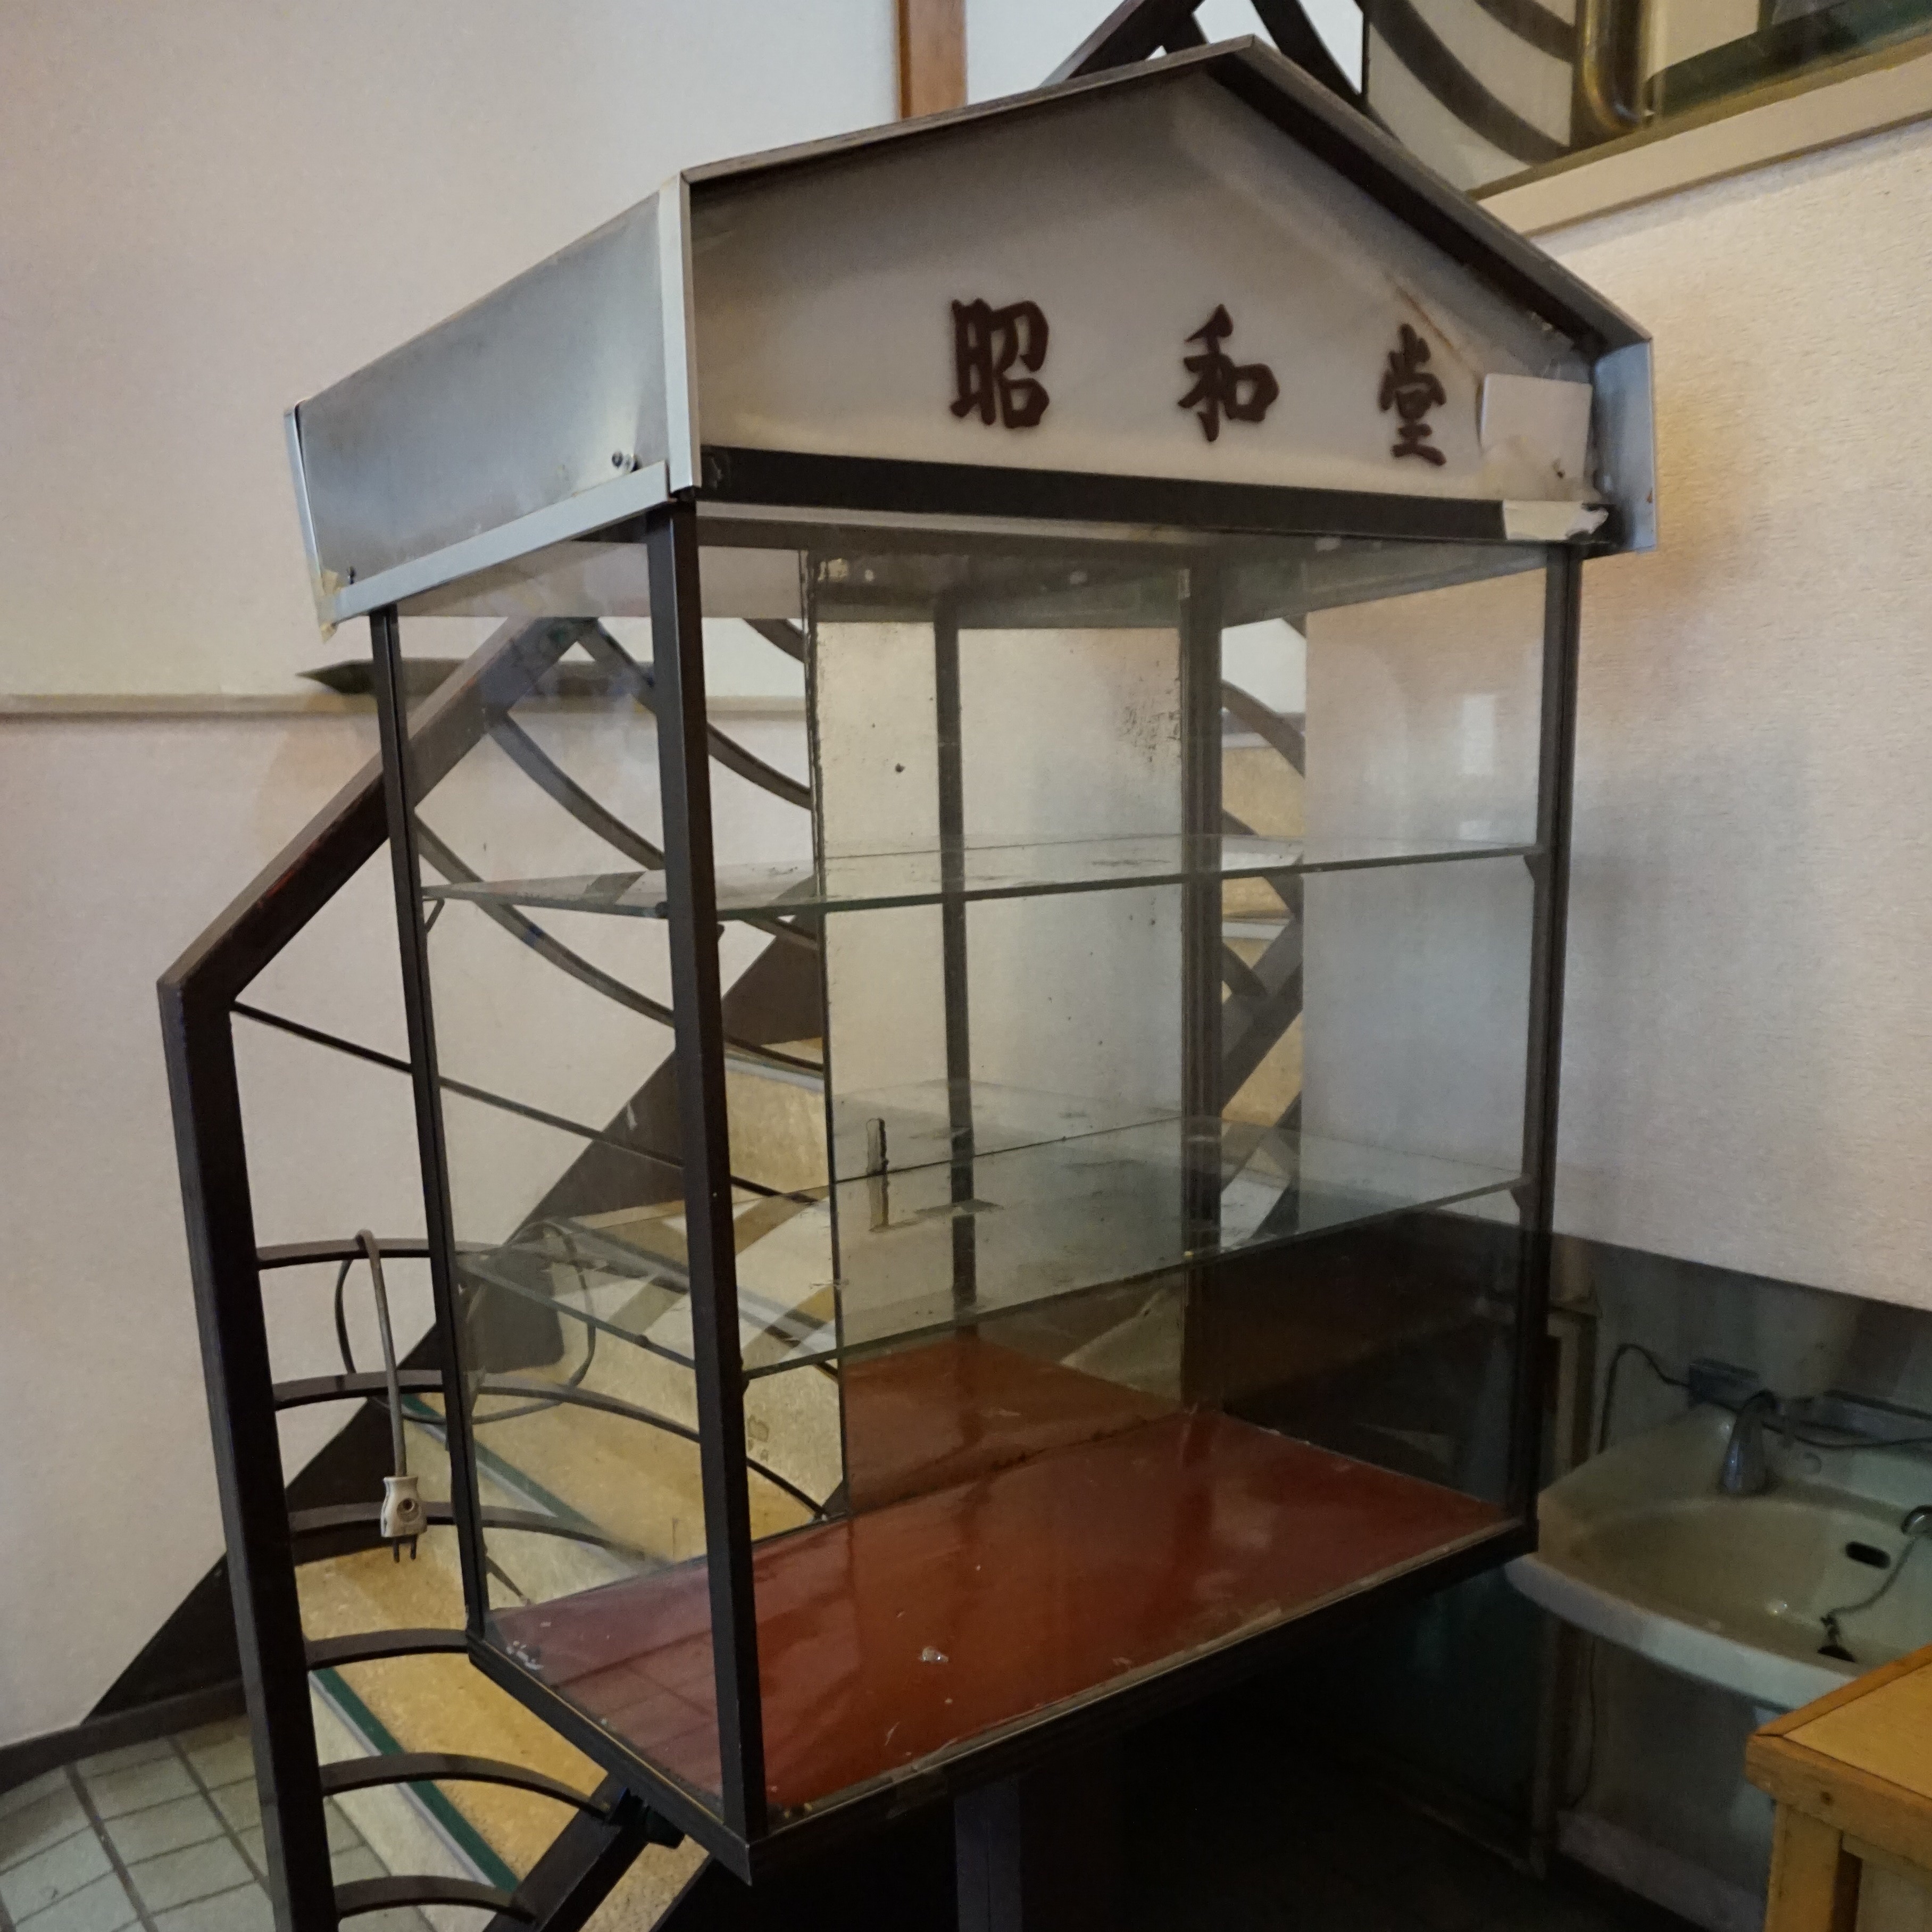 孤独のグルメ にも登場した 新丸子の喫茶と和菓子のお店 昭和堂 純喫茶家具の村田商會